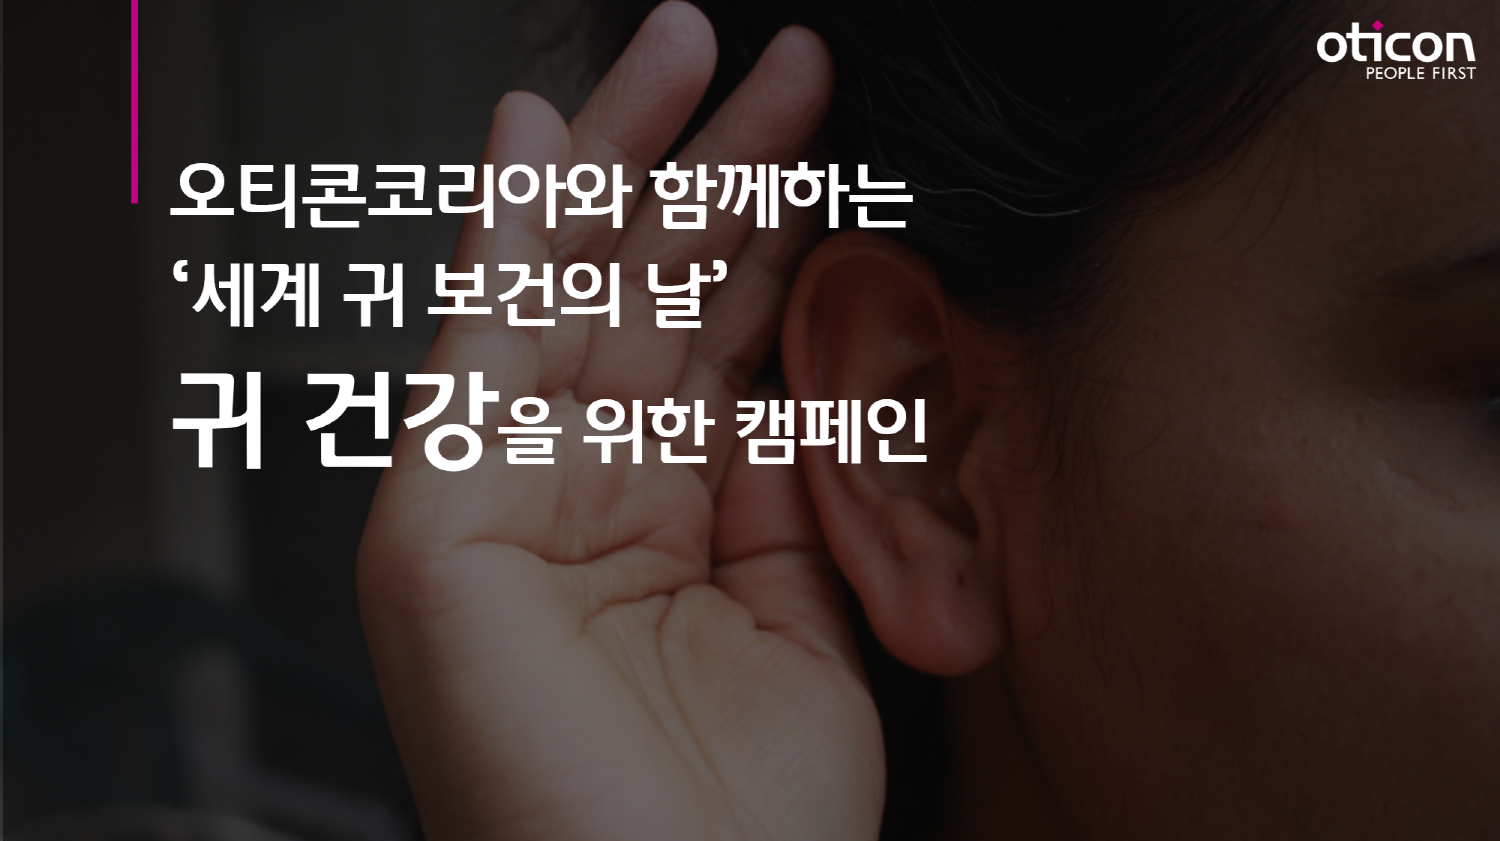 3월 3일, 세계 귀 보건의 날(World Hearing Day)